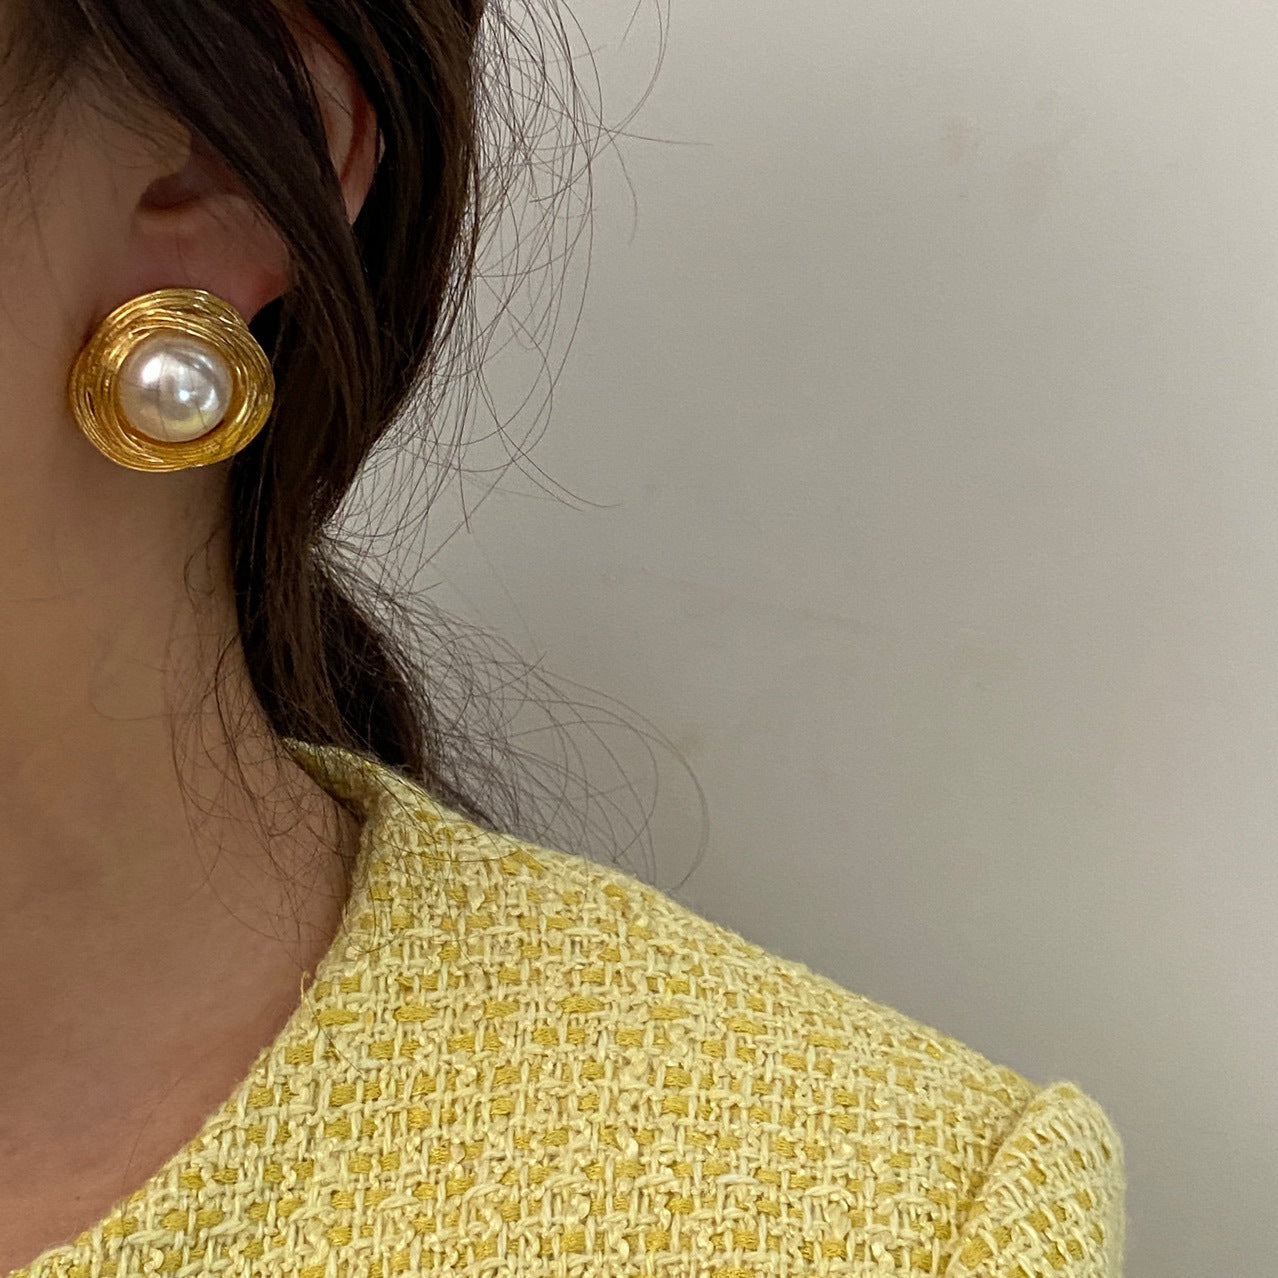 Gold Wire Winding Pearl Earrings - Modingo Modingo